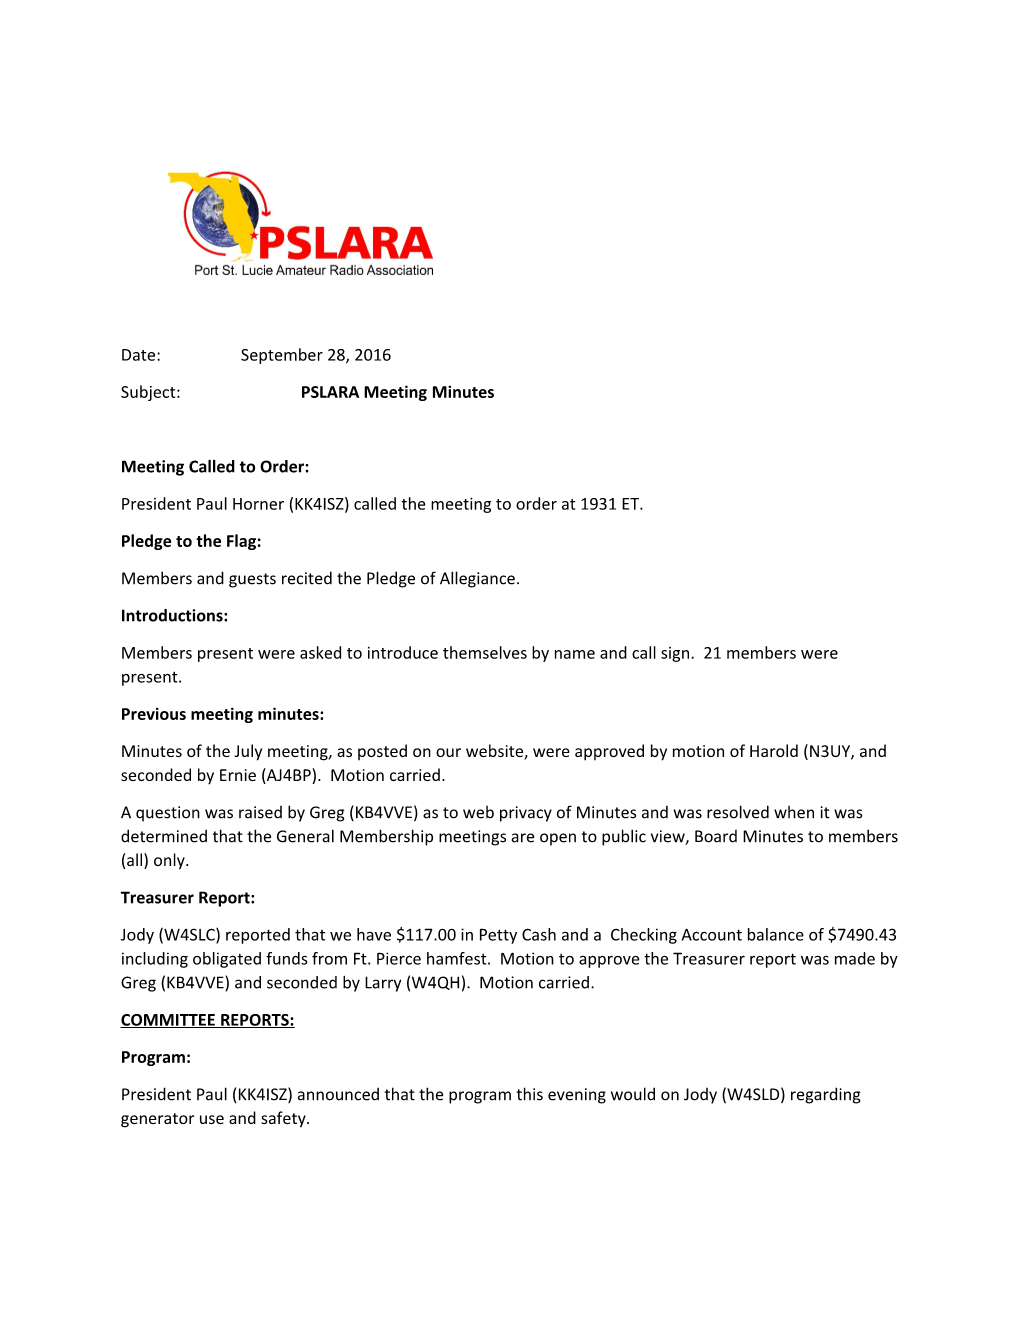 Subject: PSLARA Meeting Minutes